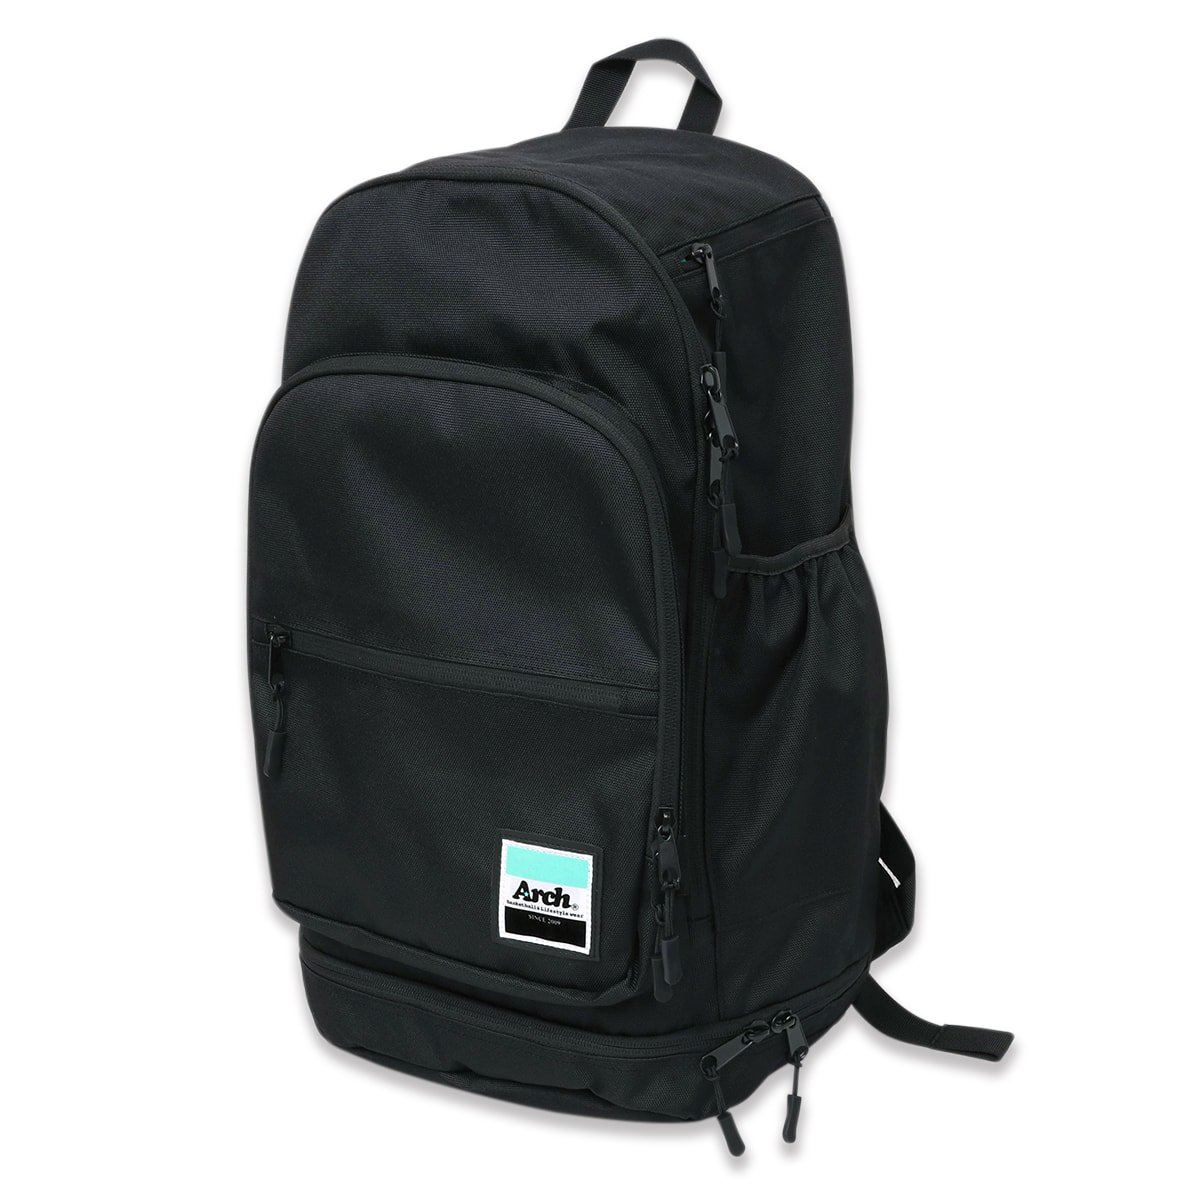 workout backpack 2.0【black/mint】